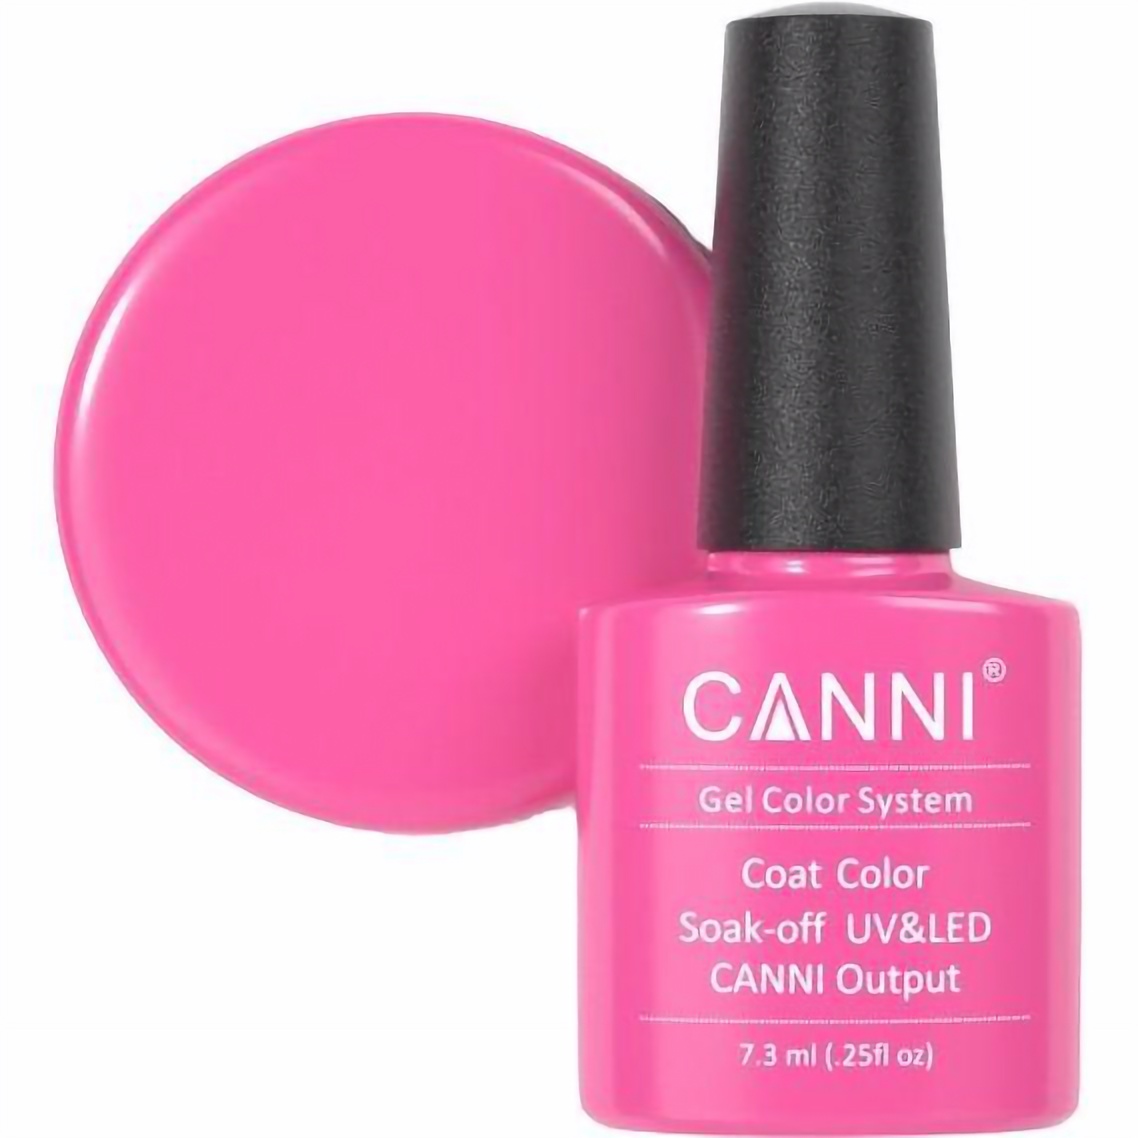 Гель-лак Canni Color Coat Soak-off UV&LED 112 розовый фуксия 7.3 мл - фото 1